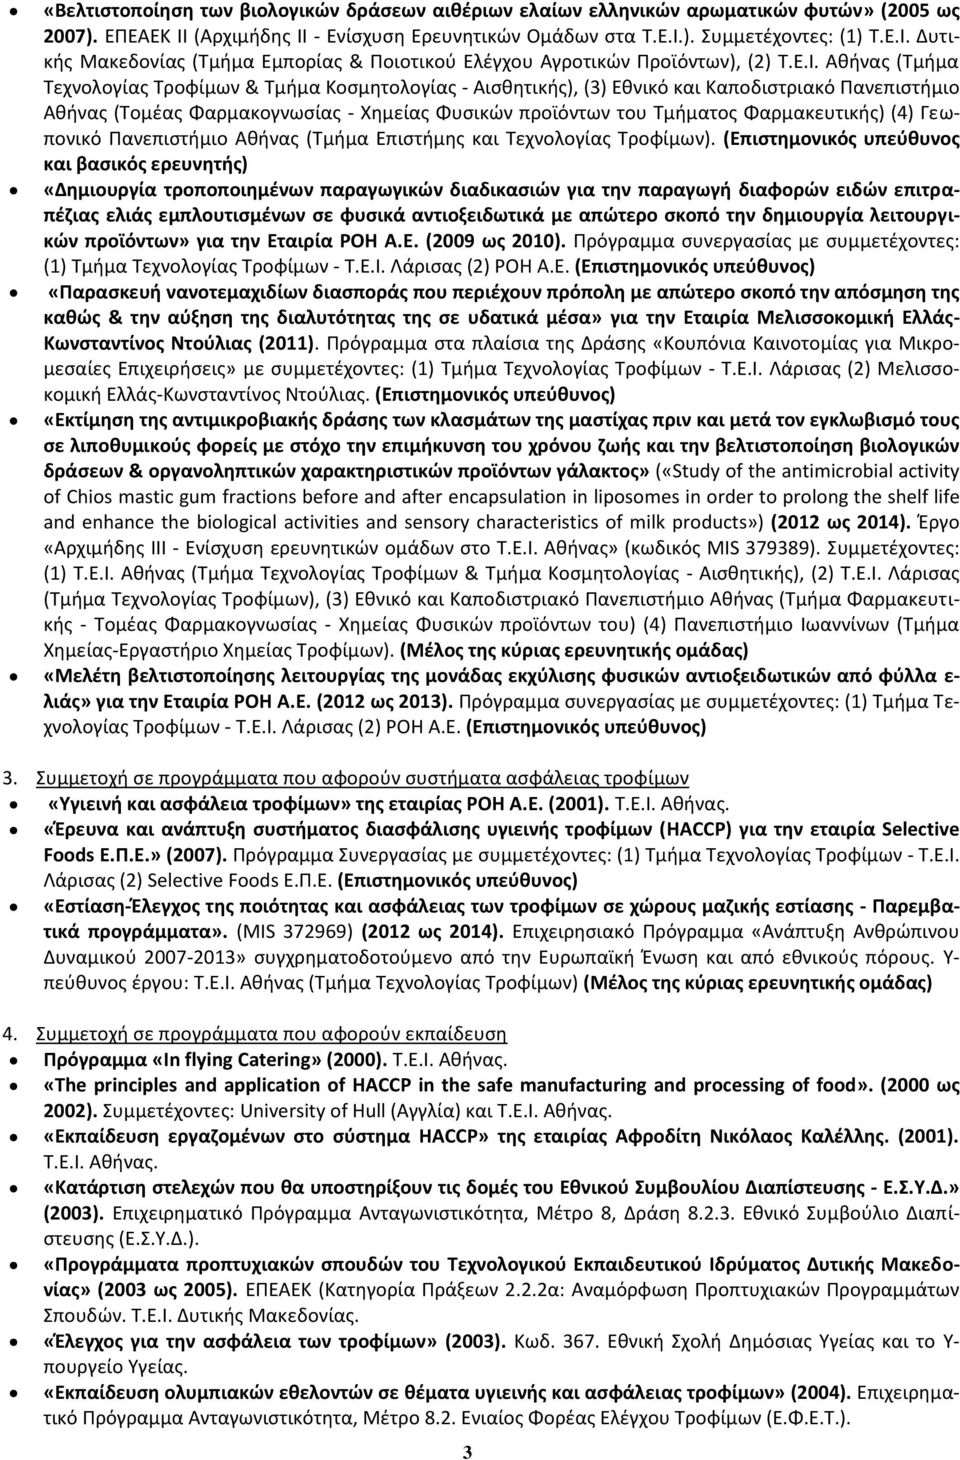 Δυτικής Μακεδονίας (Τμήμα Εμπορίας & Ποιοτικού Ελέγχου Αγροτικών Προϊόντων), (2) Τ.Ε.Ι.